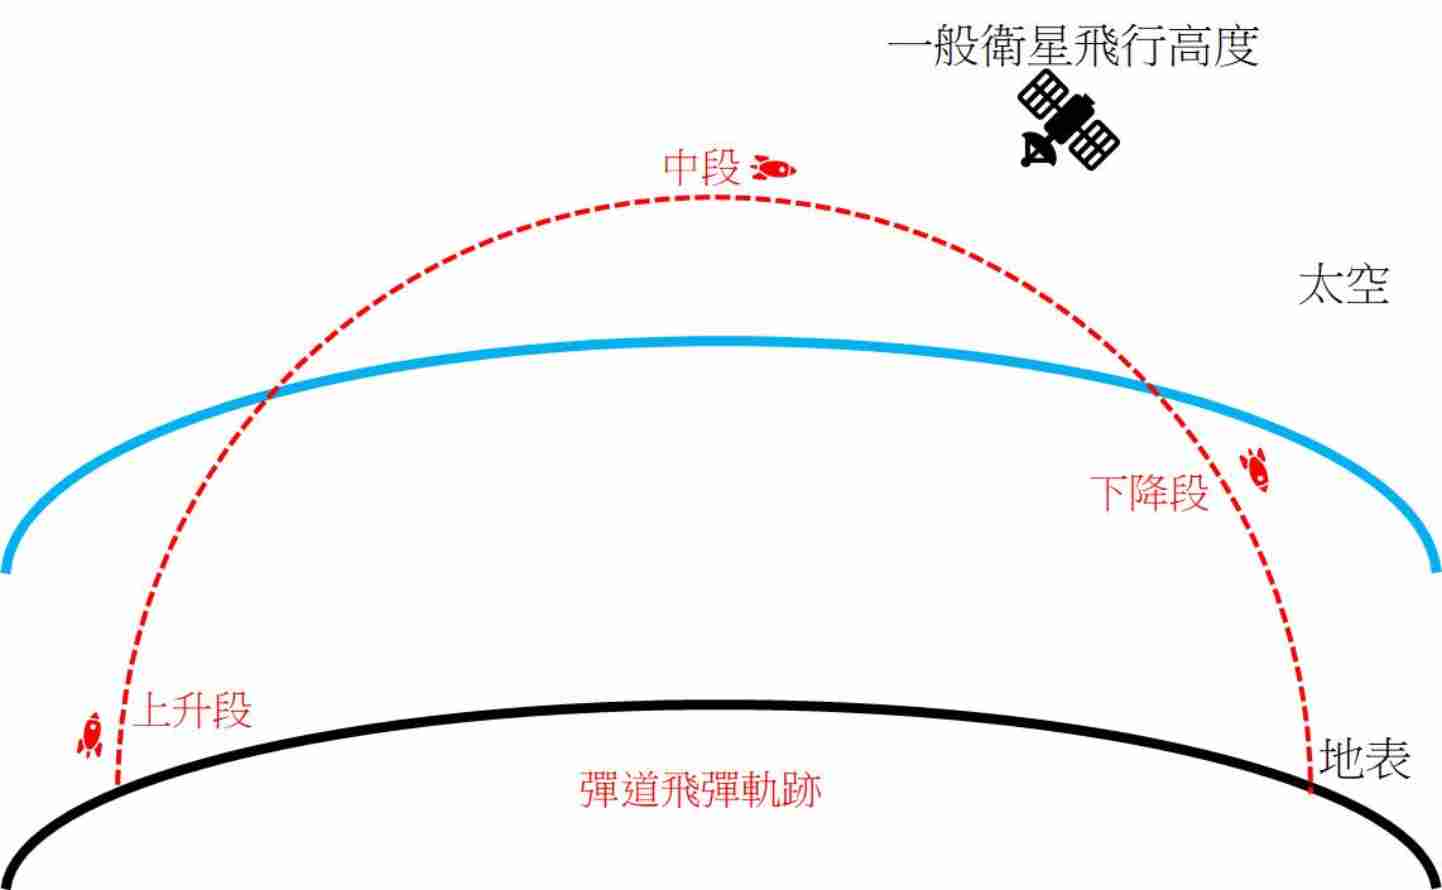 رسم توضيحي لمسار صاروخ باليستي باللون الأحمر